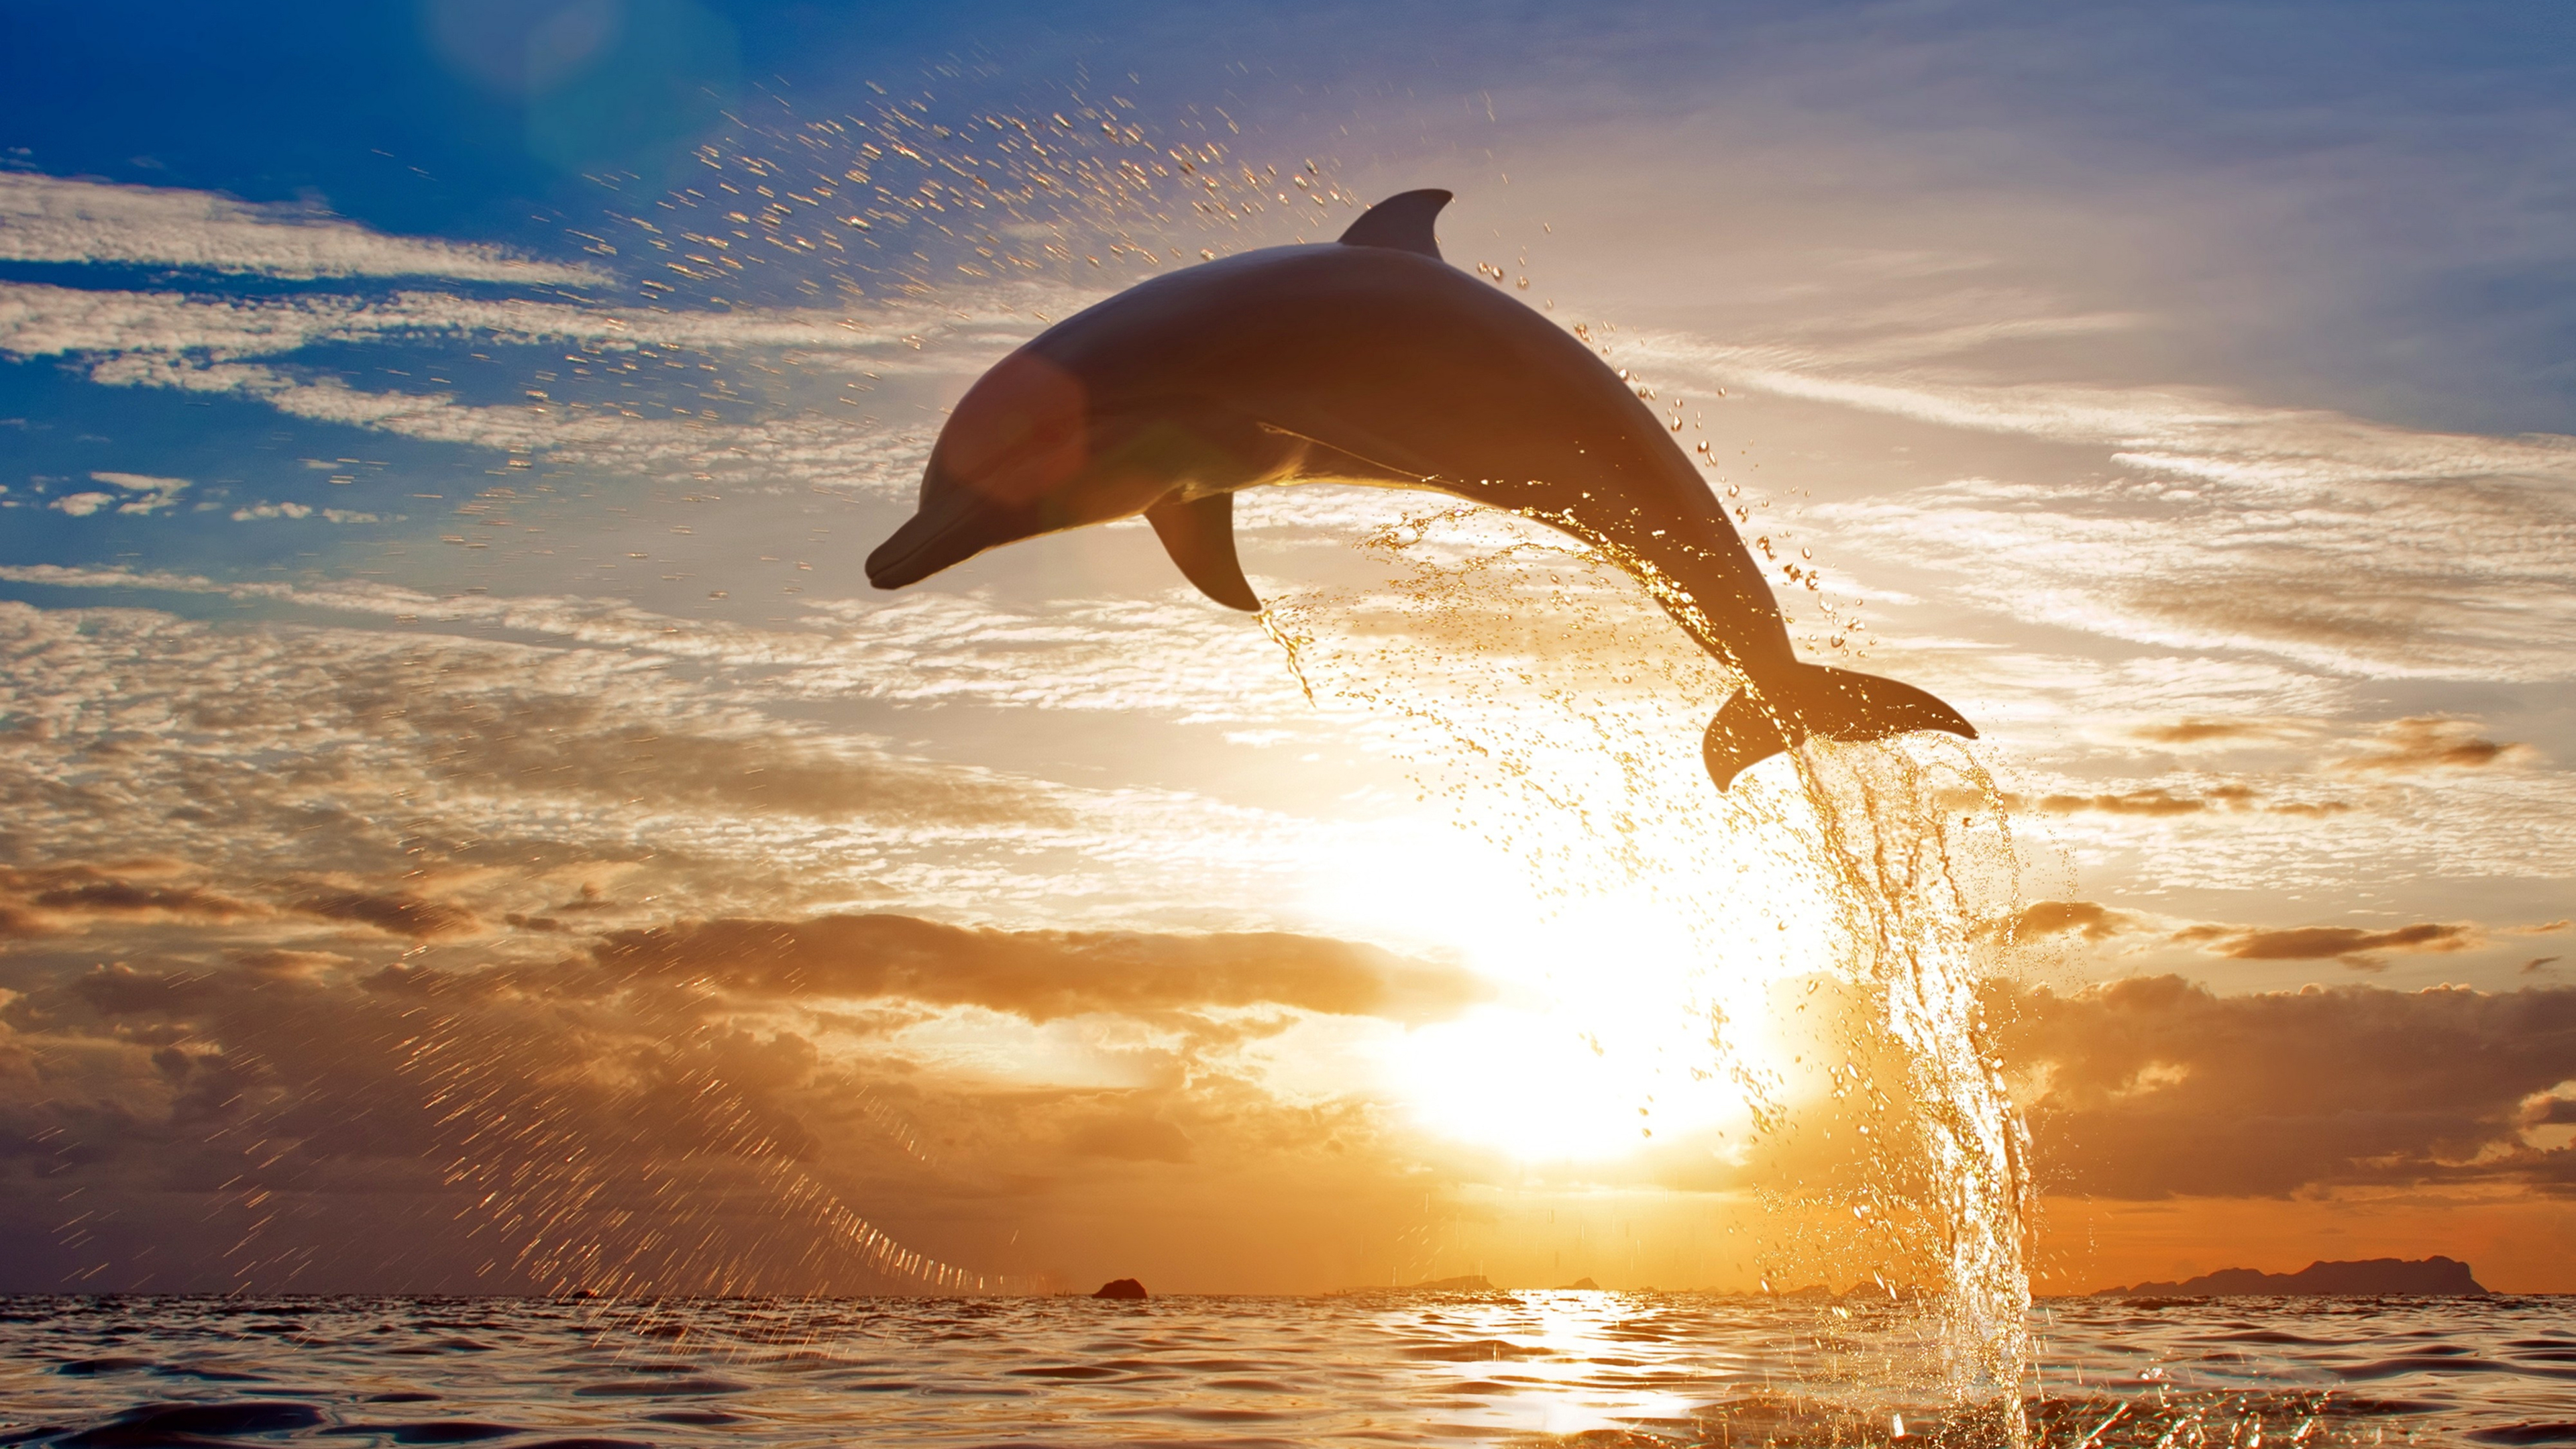 афалина, дельфин, китообразные, морское животное, закат, Иравади, море, дельфин в прыжке, 3840х2160, 4к